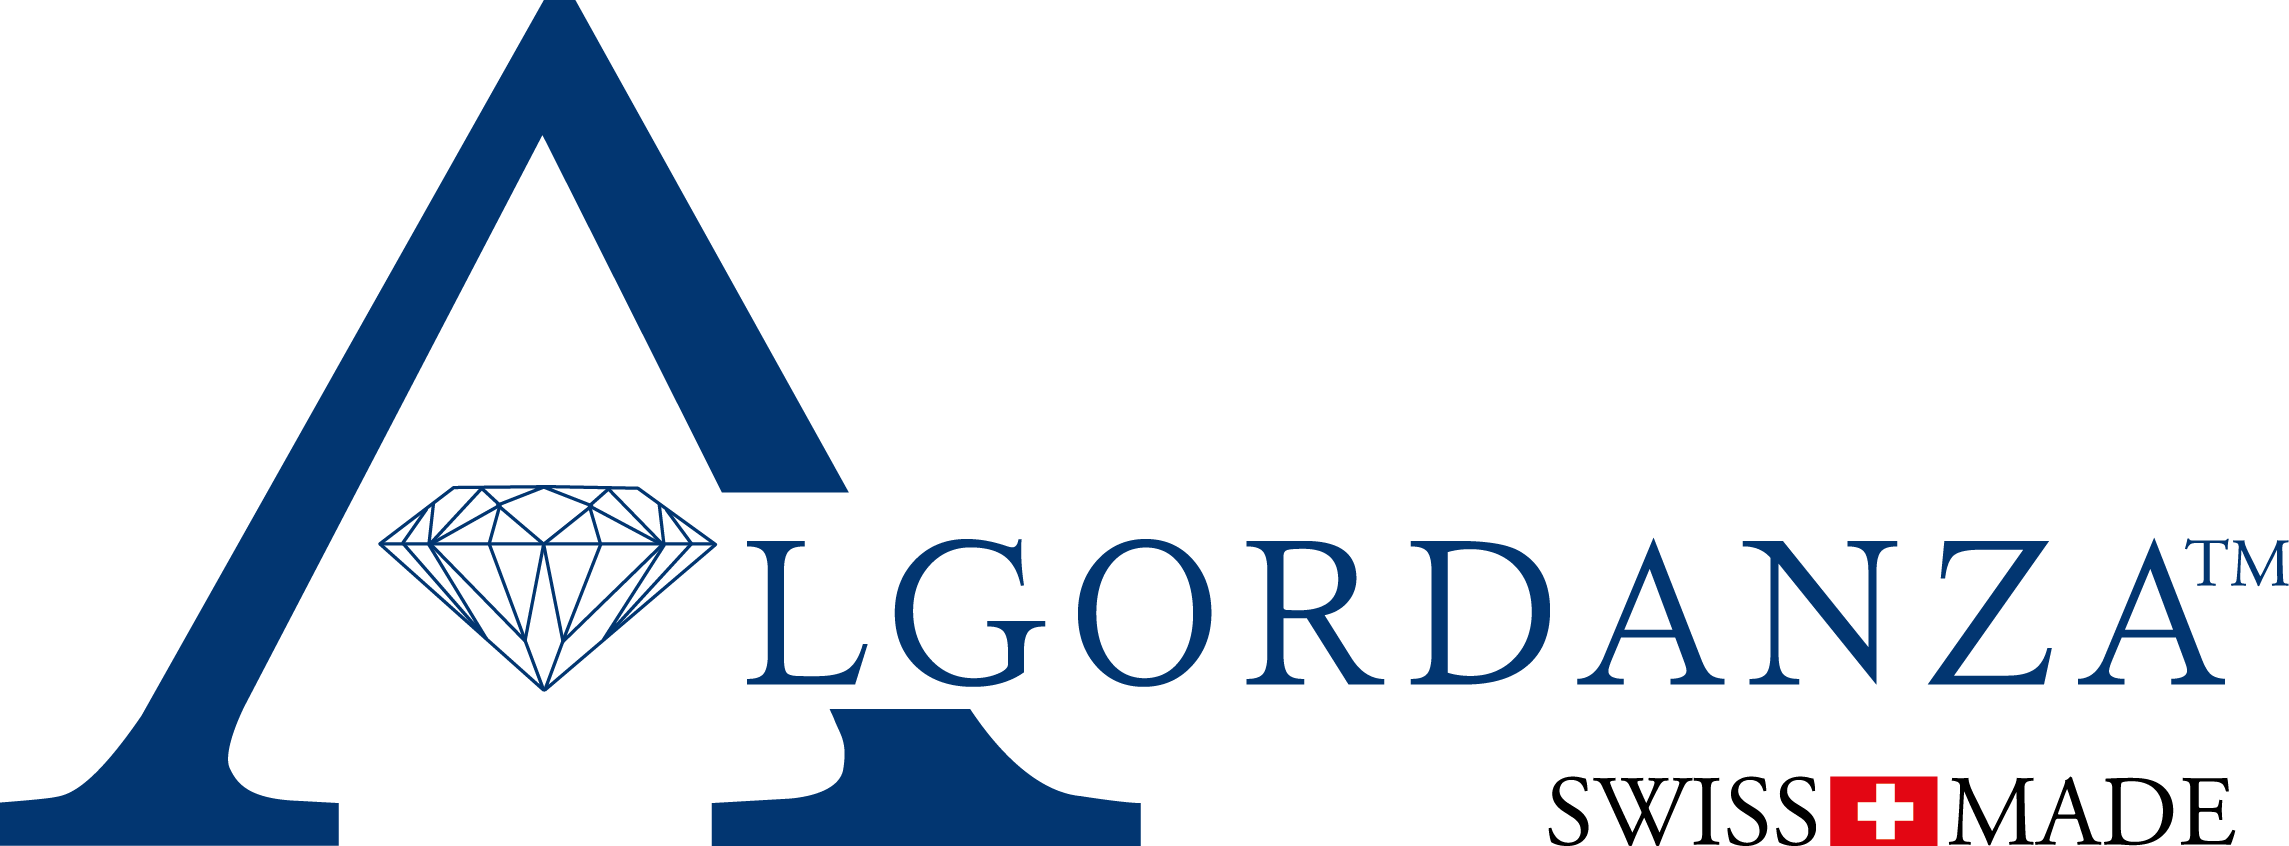 Logo Algordanza Swissmade transparent [Konvertiert]